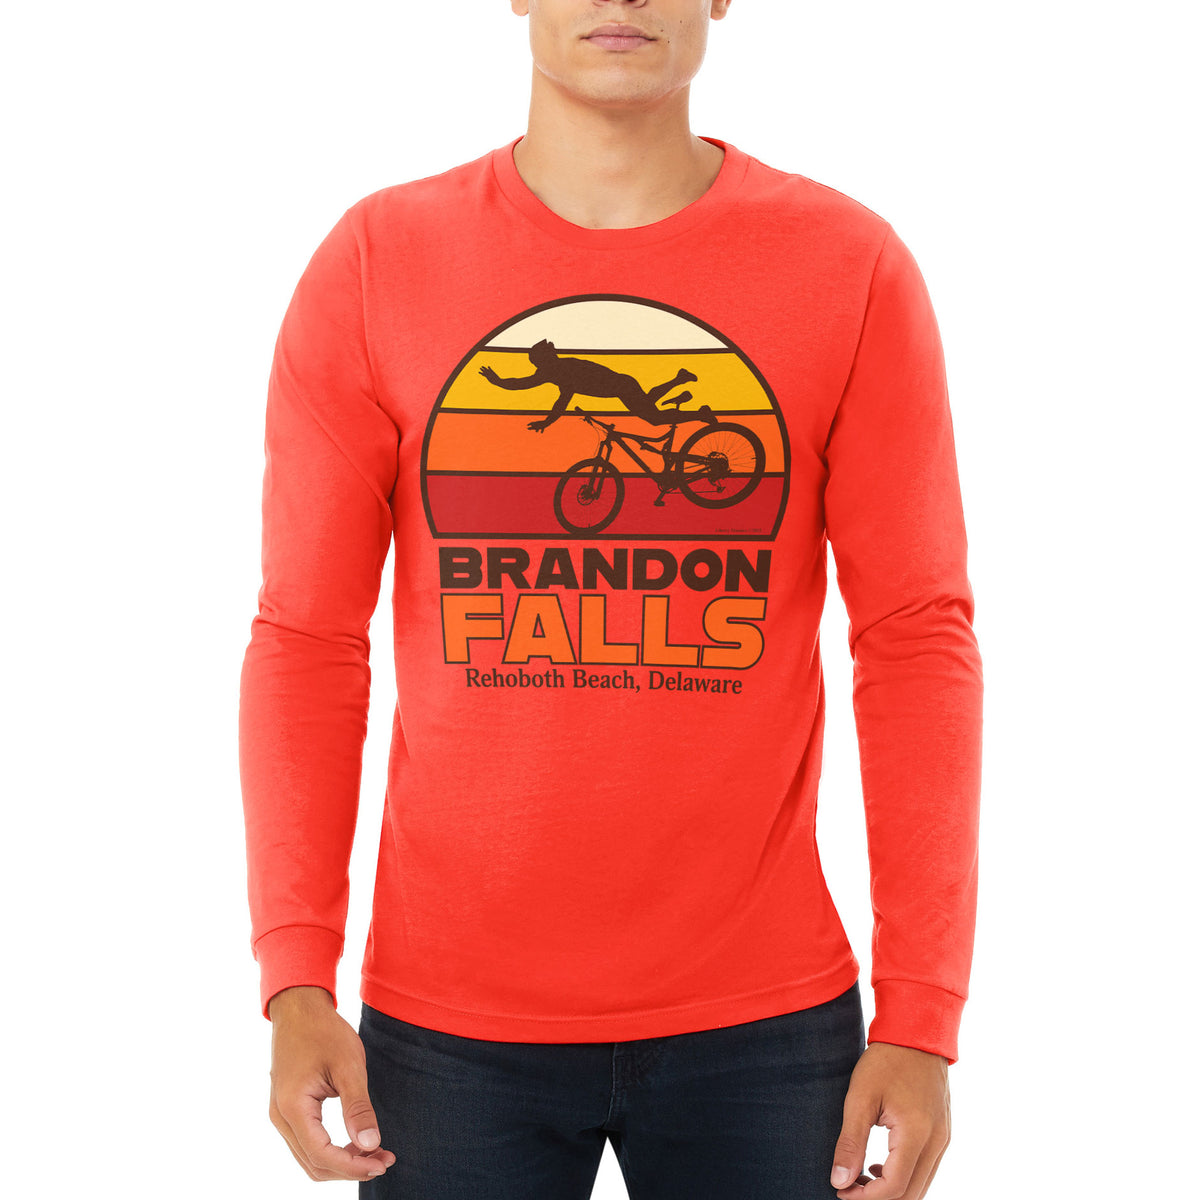 Brandon is Better Long Sleeve Shirt